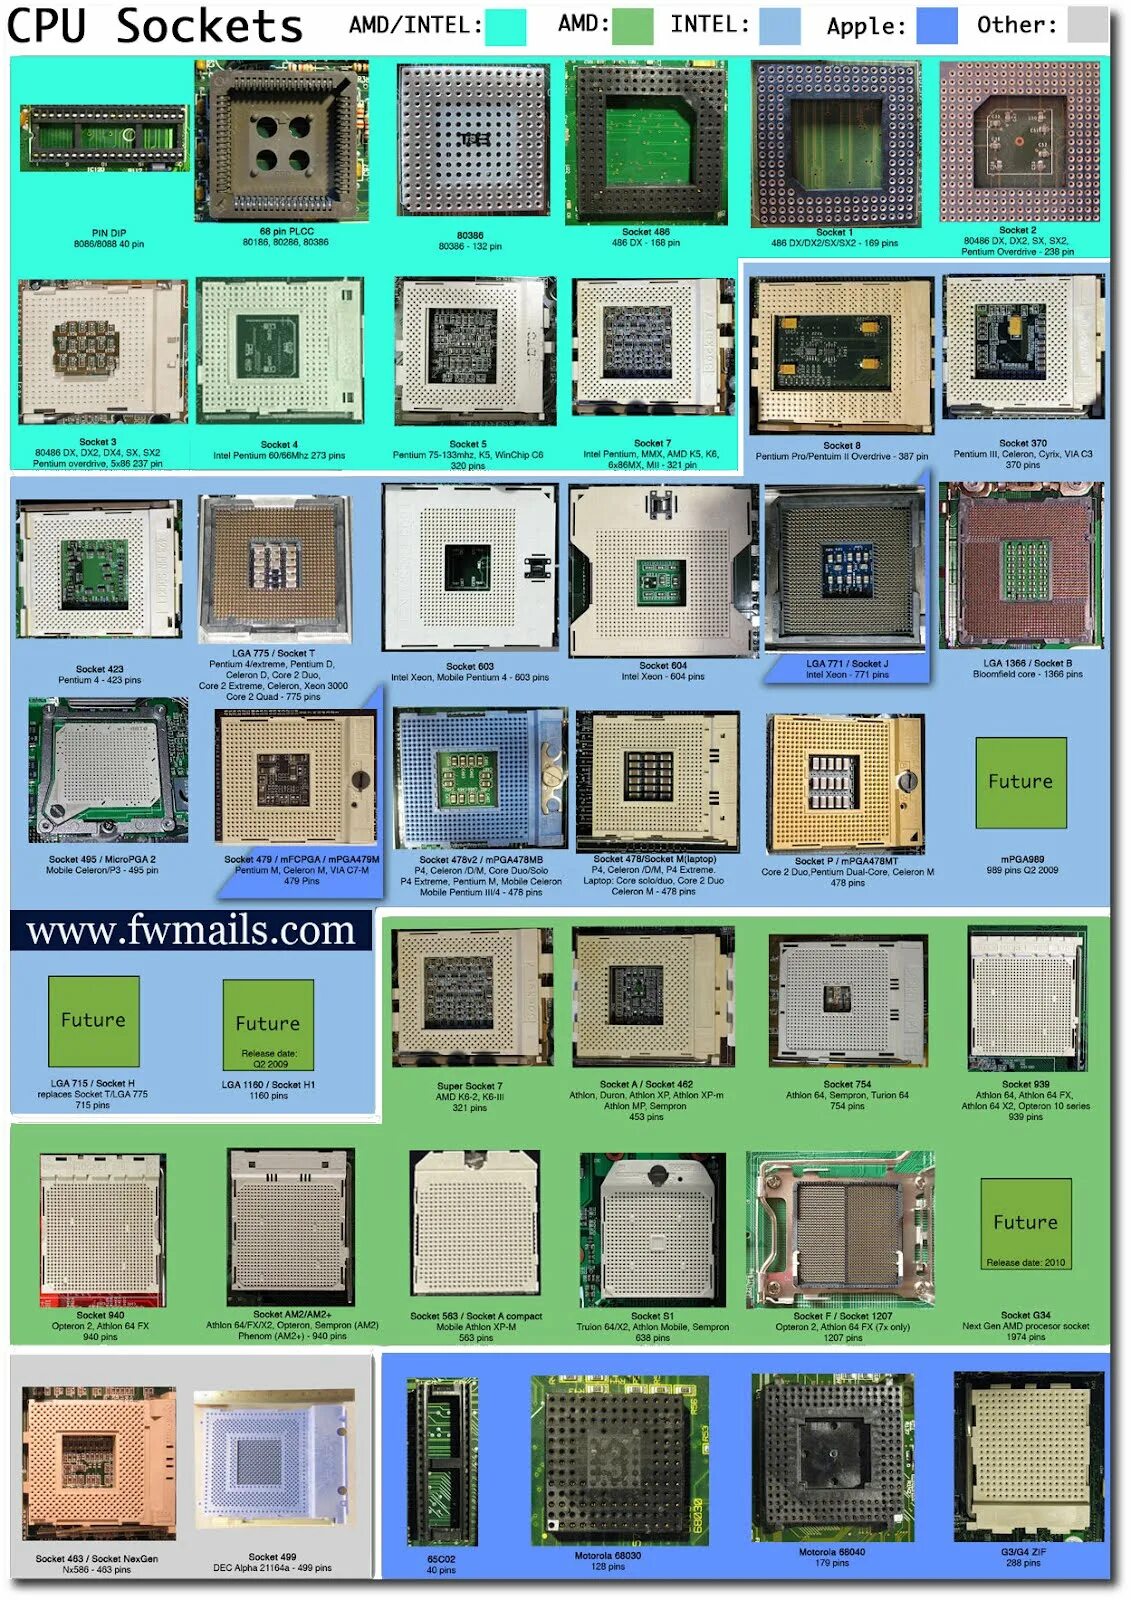 Поколение материнских плат intel. Поколения сокетов AMD. Сокеты процессоров Intel. Socket 370 (PGA-370). Тип корпуса процессора АМД. Сокеты процессоров Интел таблица.